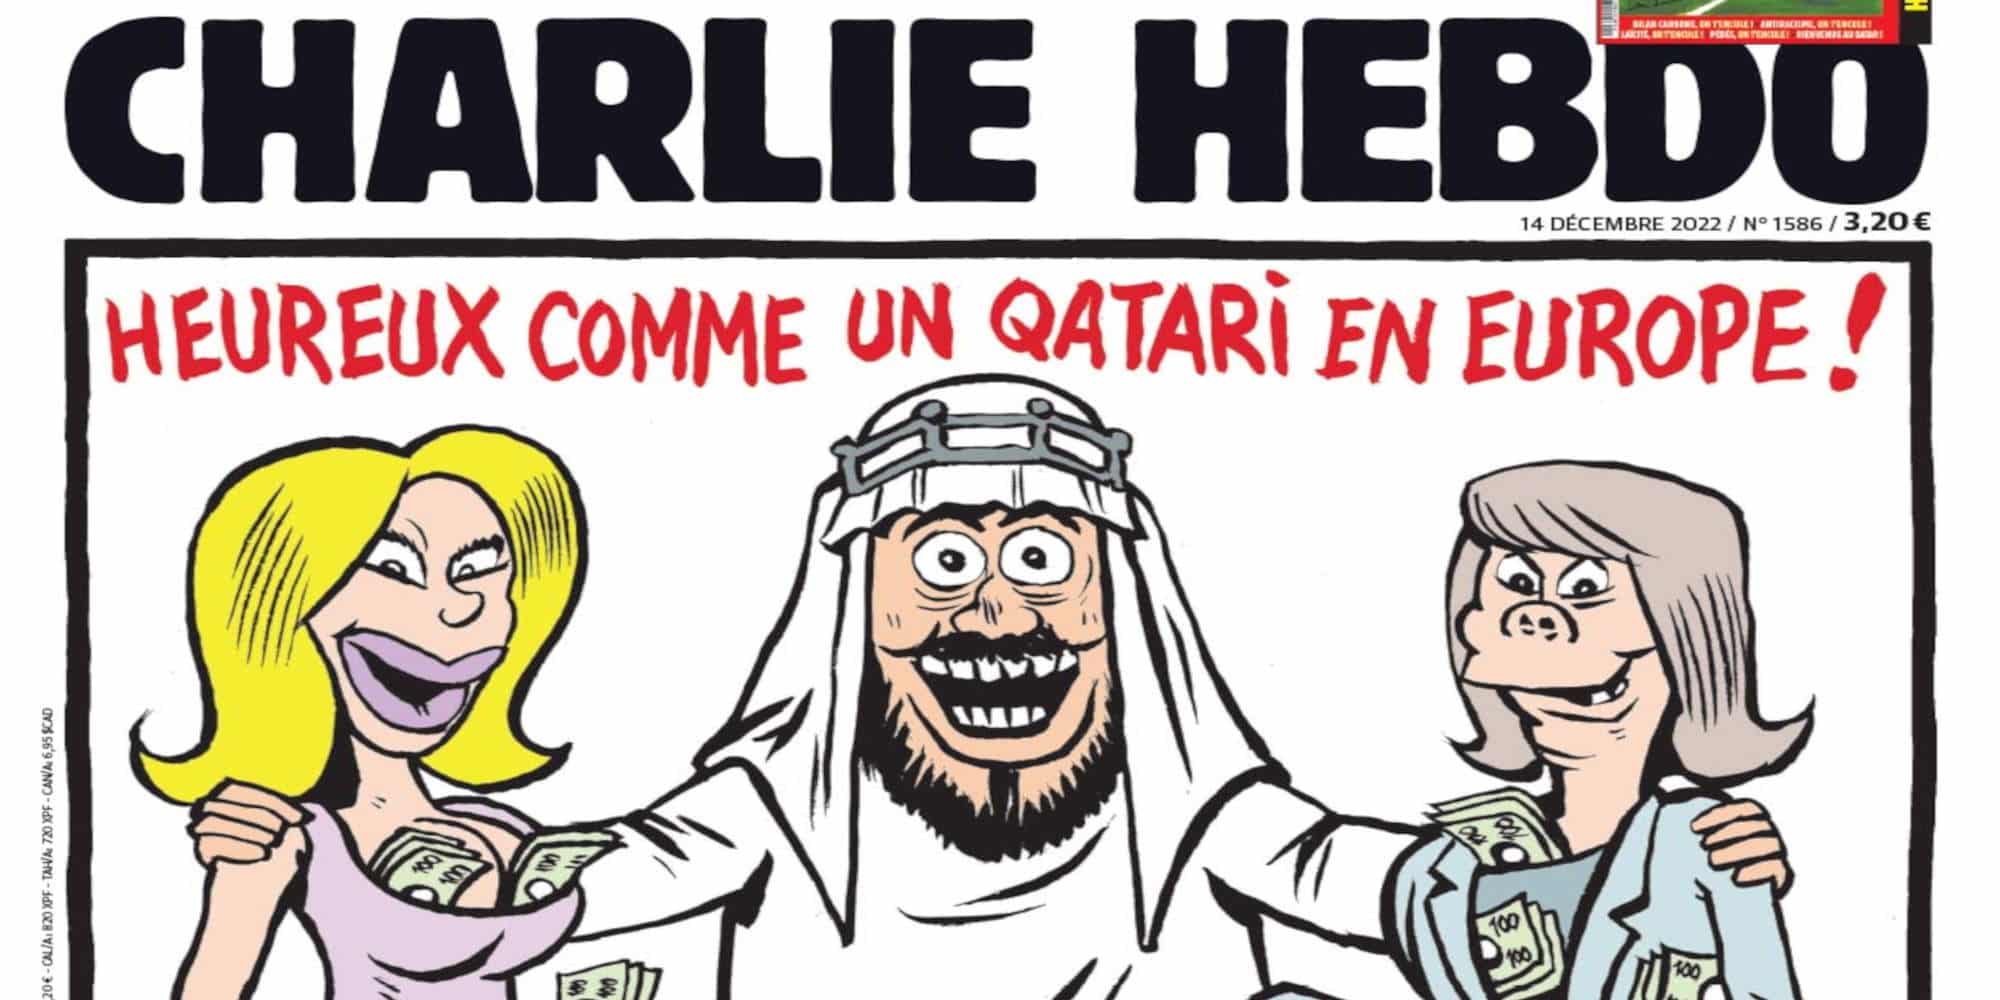 Το πρωτοσέλιδο του Charlie Hebdo για την υπόθεση Qatar Gate